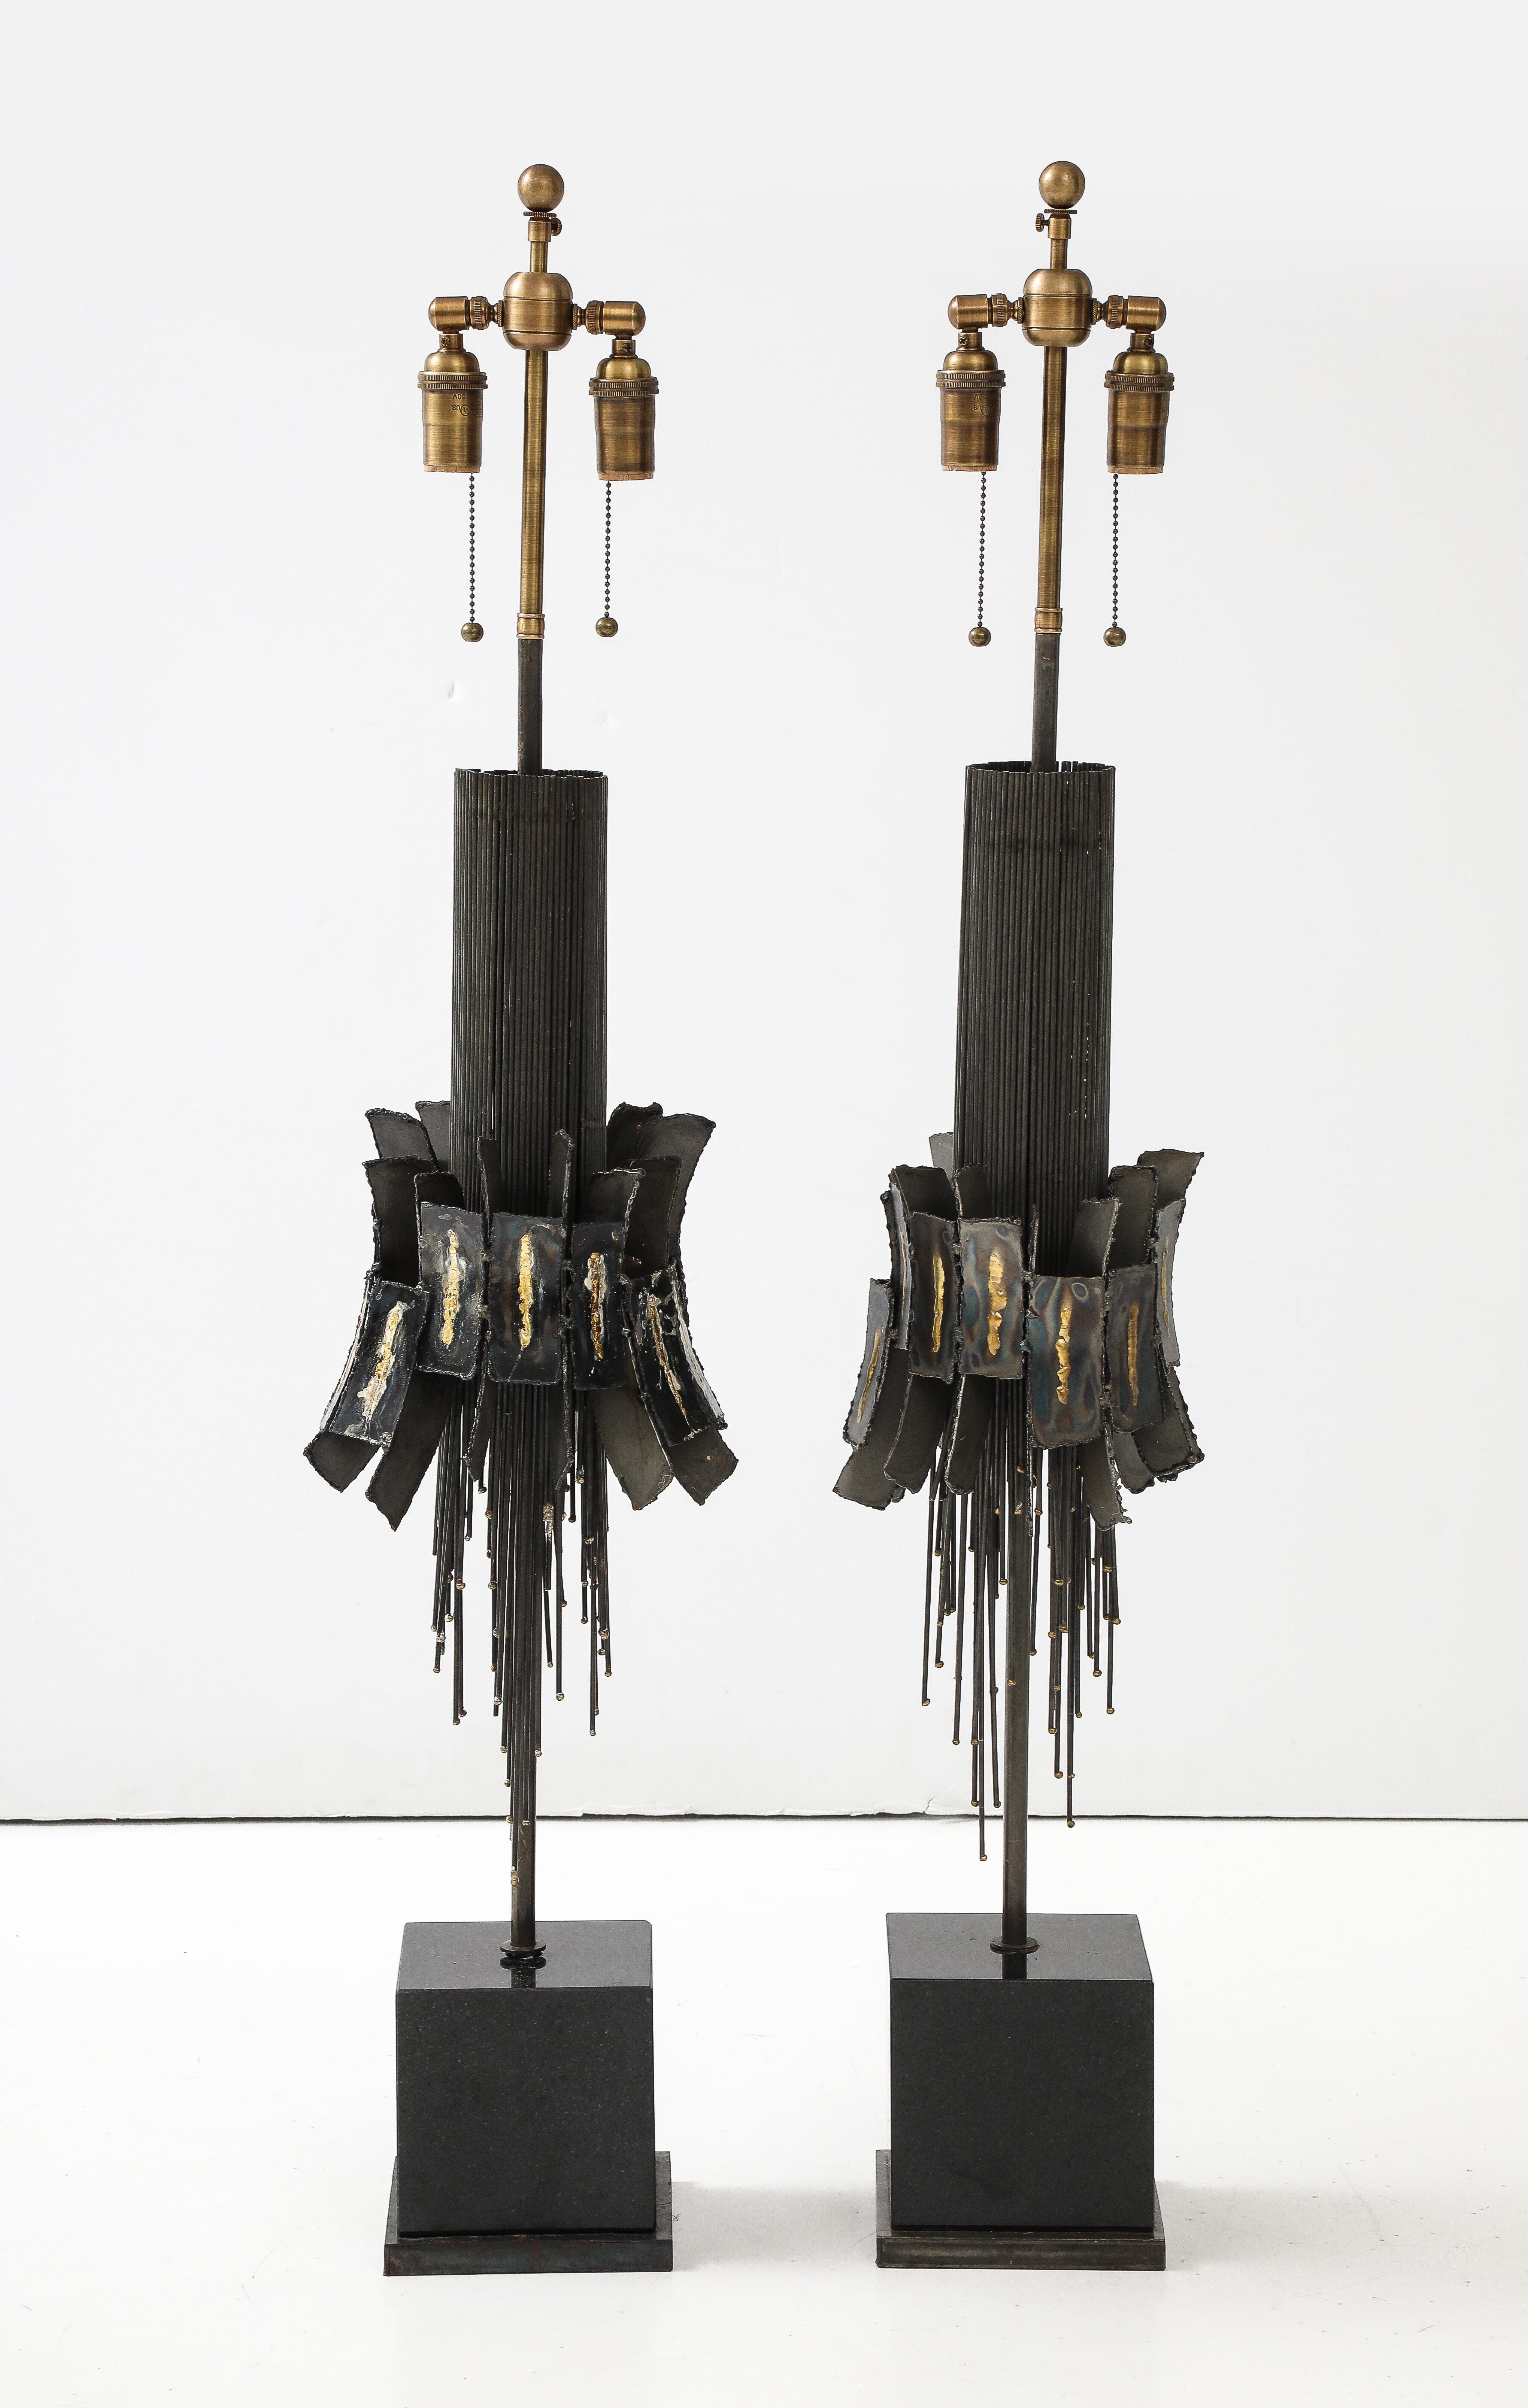 Großes Paar Brutalist-Lampen aus den 1970er Jahren.
Die Lampenformen aus Metall stehen auf Sockeln aus schwarzem Marmor, die
Neu verkabelt mit einstellbarem Antikbronze-Finish
Doppelbündel, die Glühbirnen in Standardgröße und Seidenkordeln aufnehmen